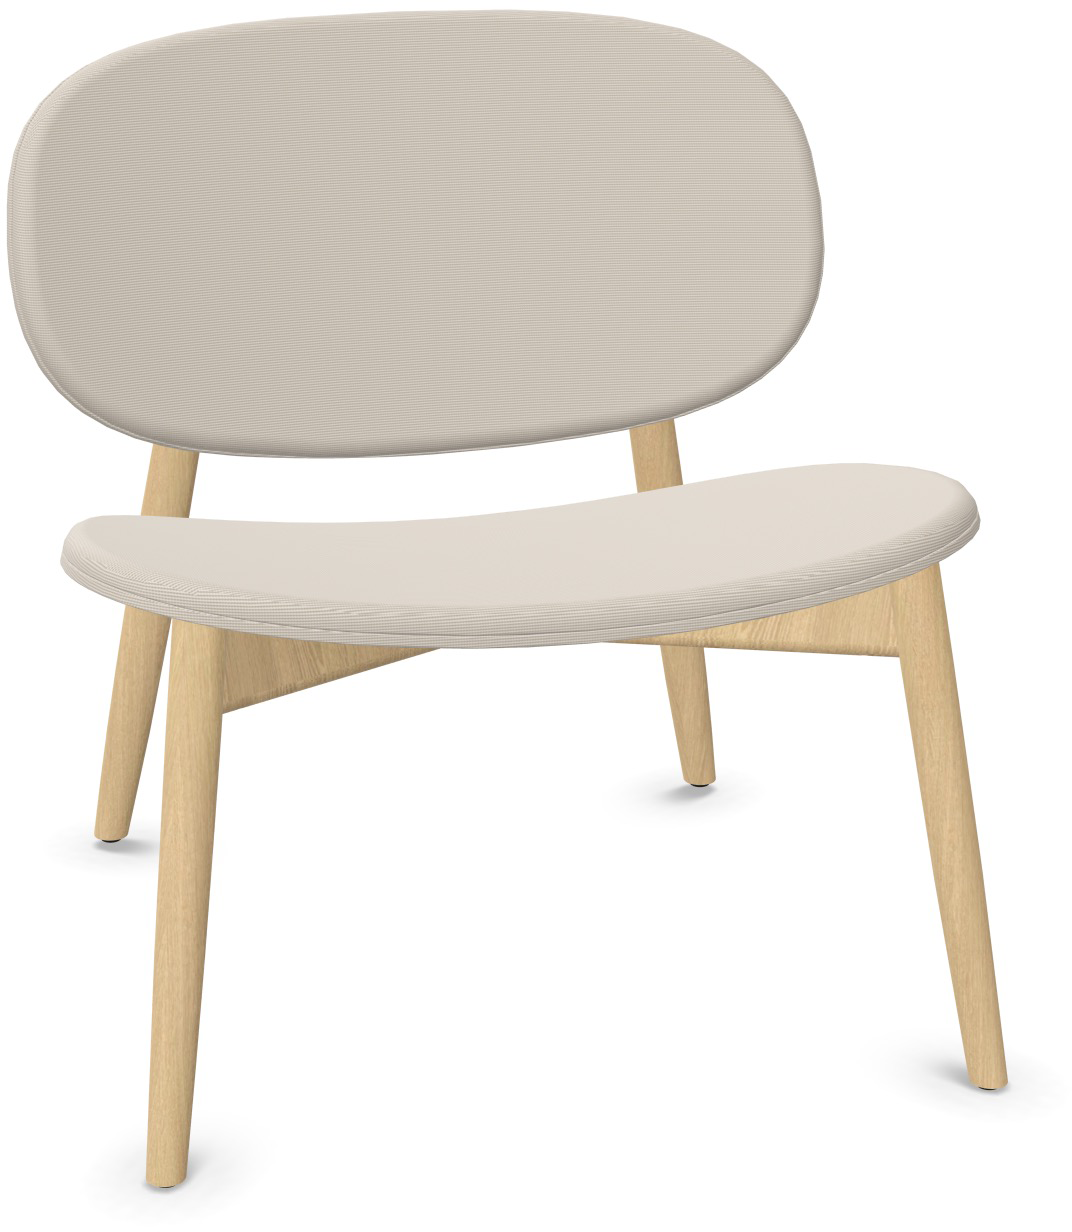 HARMO Relaxsessel in Hellgrau präsentiert im Onlineshop von KAQTU Design AG. Sessel ist von Infiniti Design